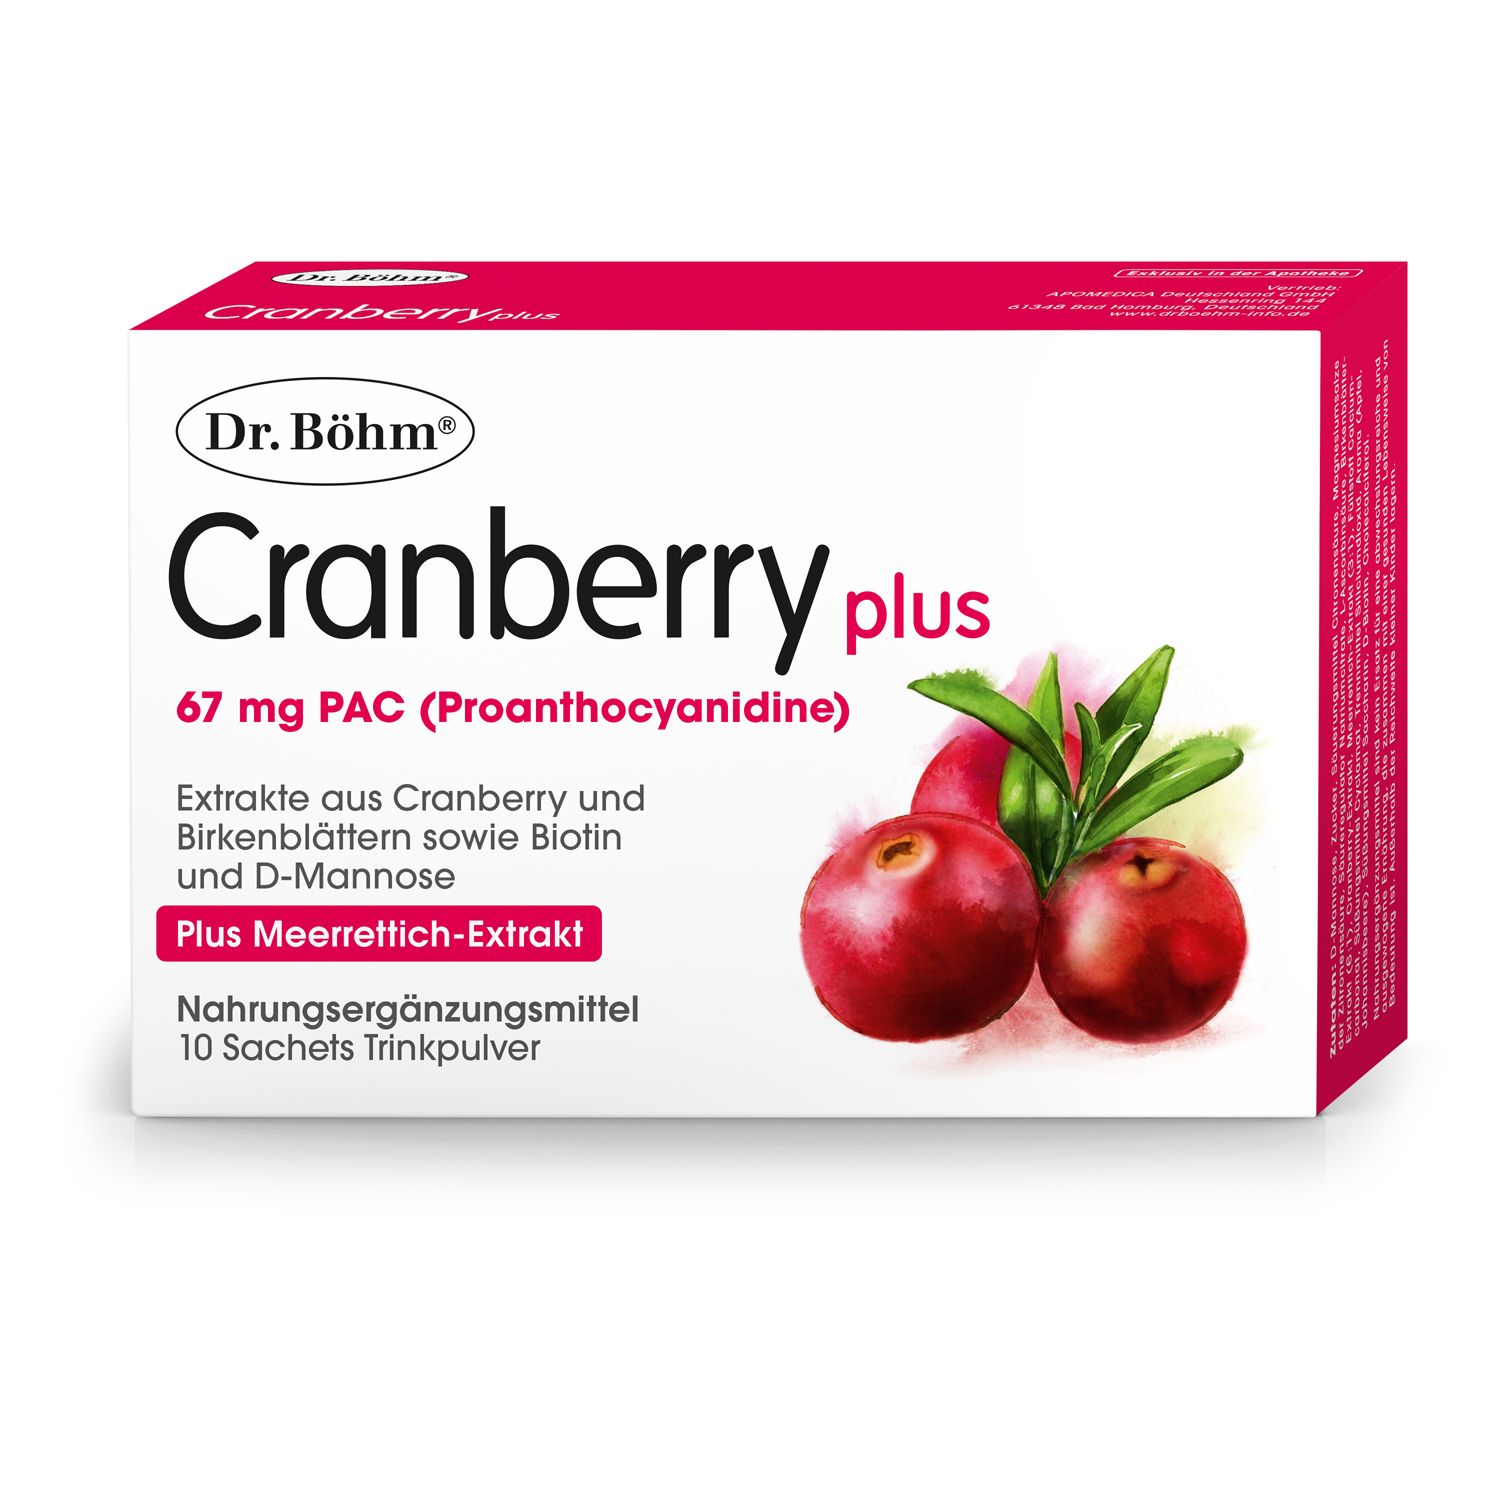 Dr. Böhm Cranberry plus 67 mg PAC